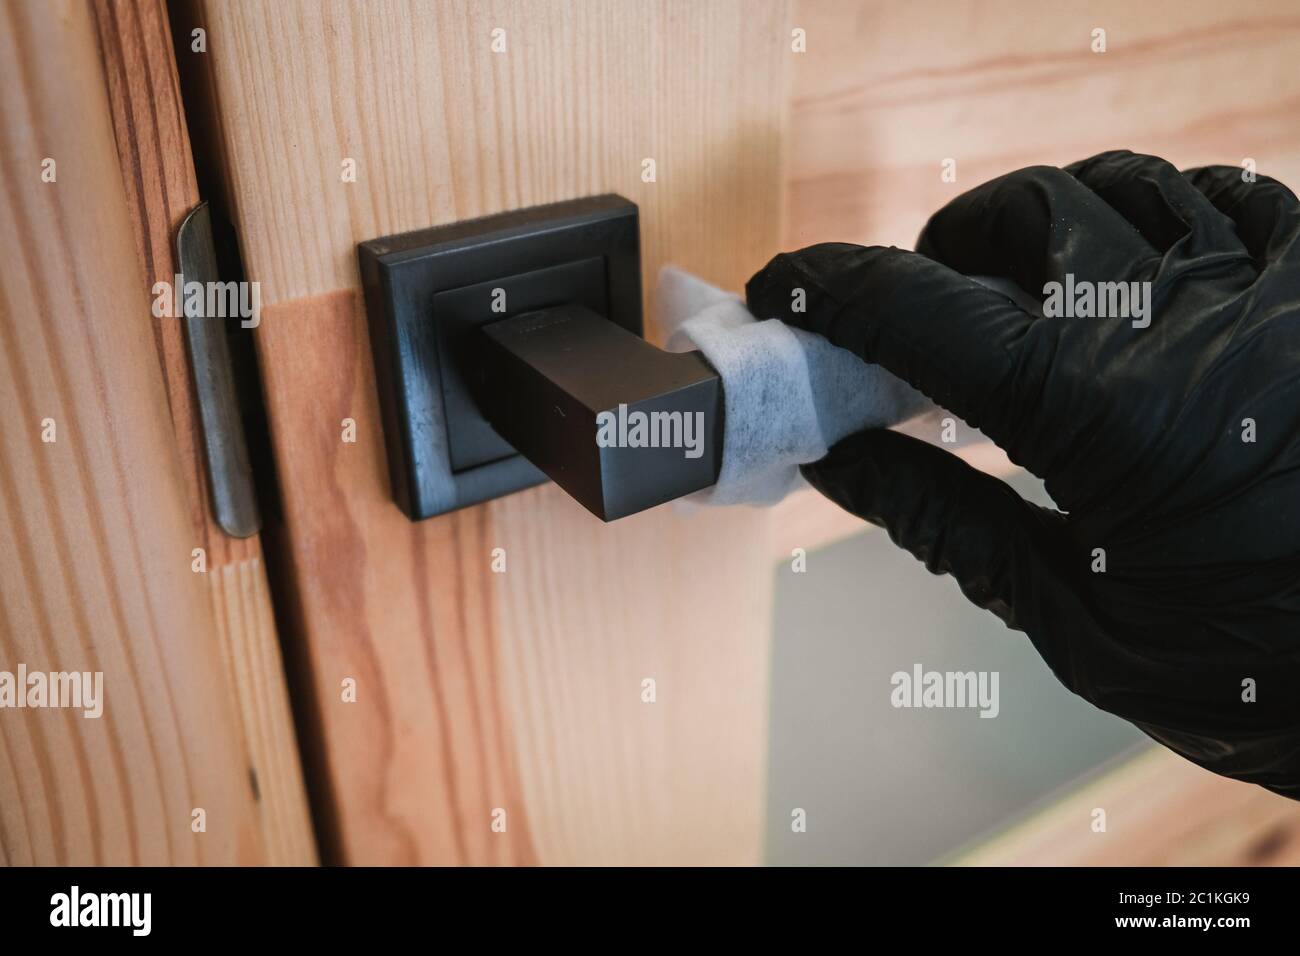 Ouverture d'une porte en bois avec des gants noirs à l'aide d'une serviette. Auto-protection lors de l'isolement des épidémies virales. Mesures de sécurité personnelle pour prévenir les virus Banque D'Images